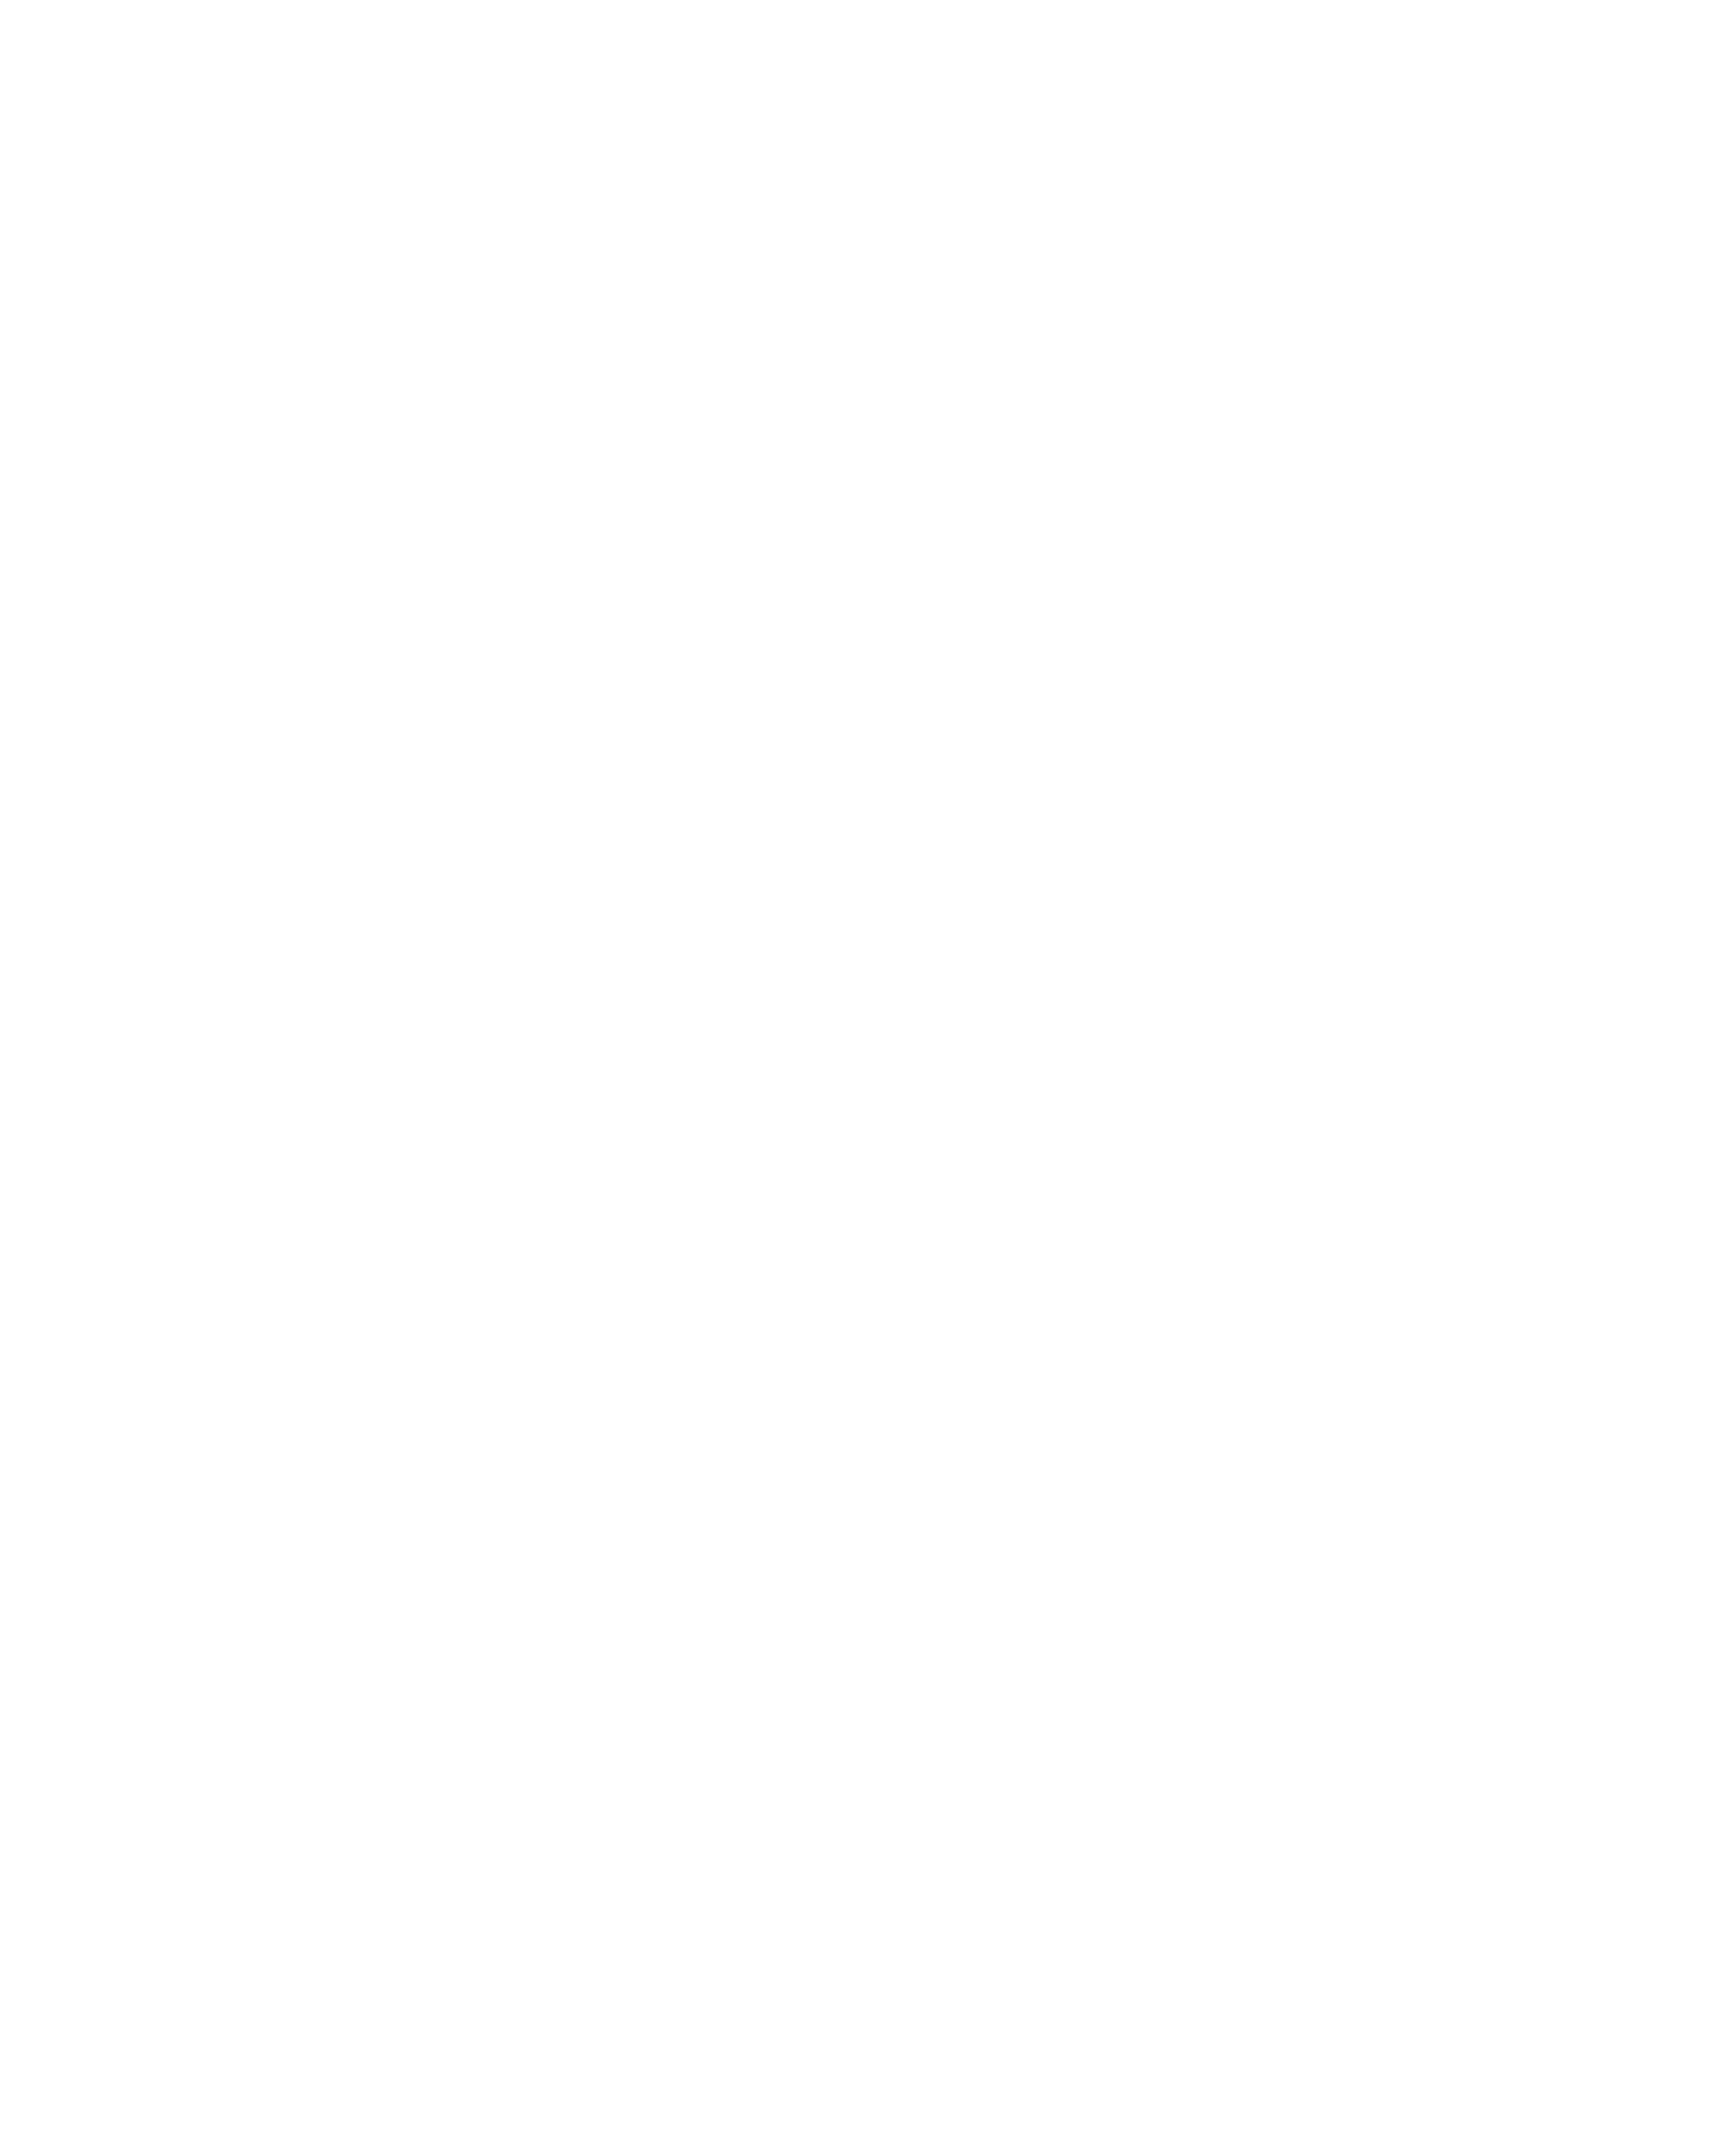 EWAWE Real Estate Group logo